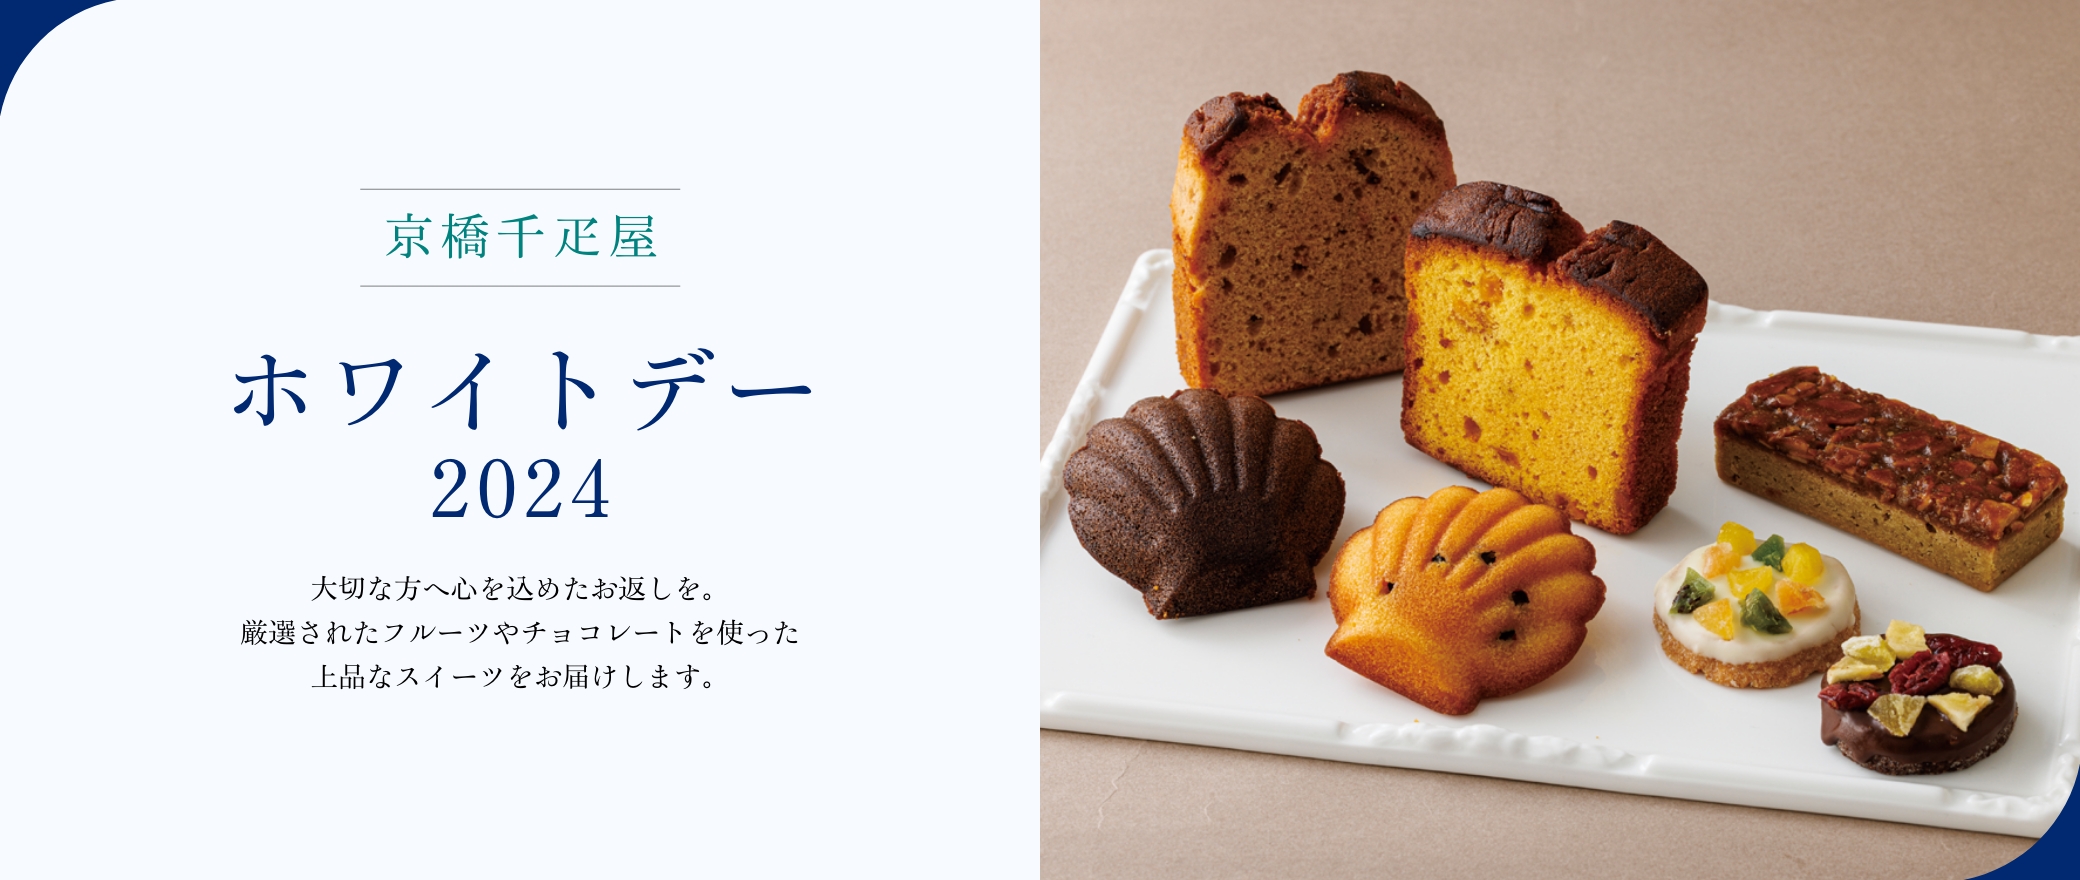 京橋千疋屋 ホワイトデー 2024 大切な方へのホワイトデーギフトに。厳選されたフルーツやチョコレートを使った上品なスイーツをお届けします。